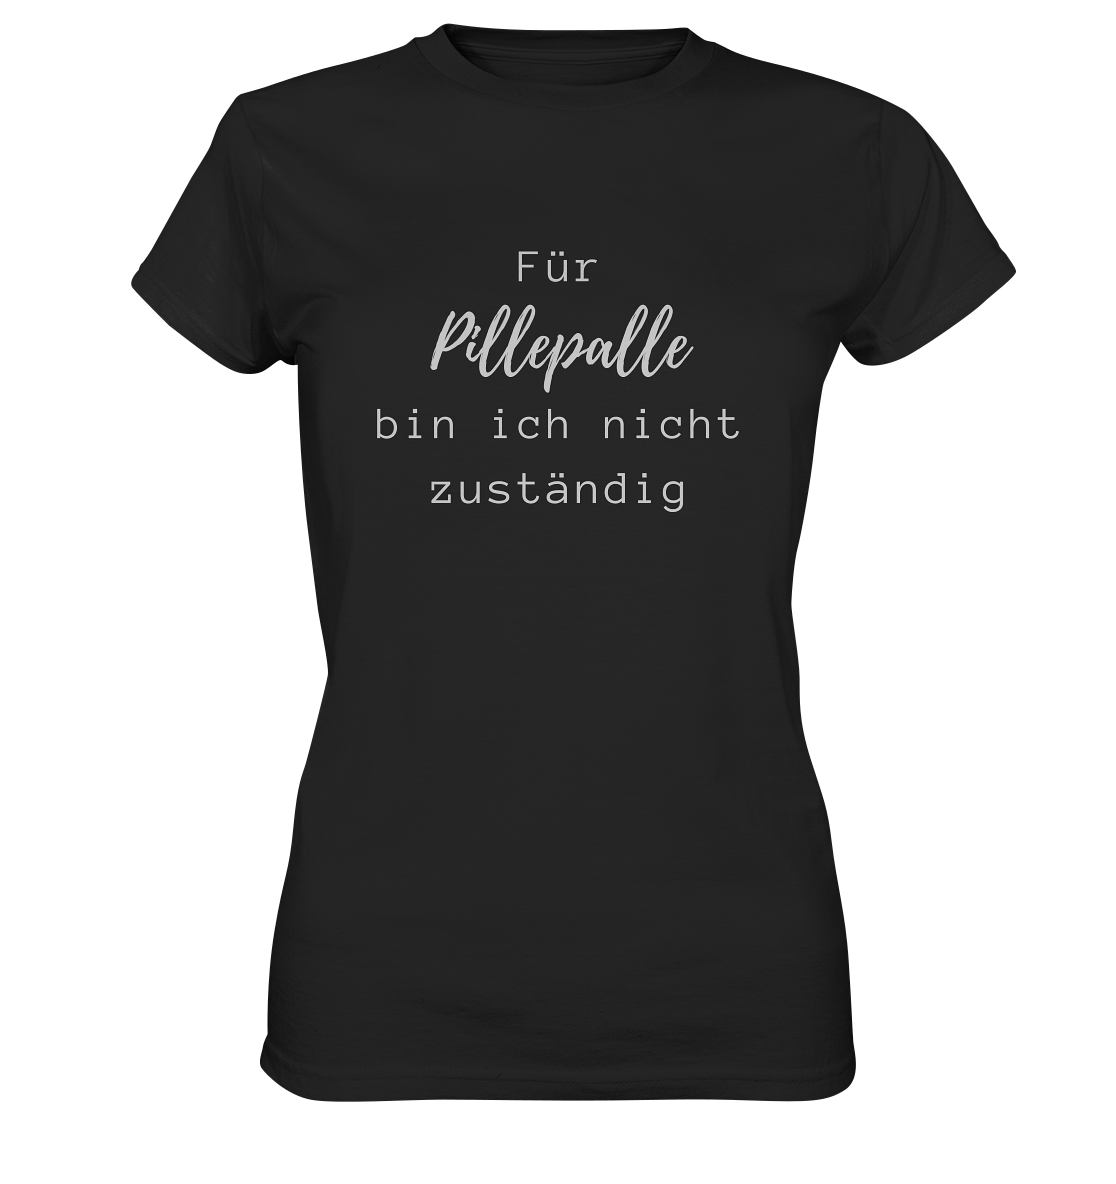 Damen-T-Shirt, Rundhals, mit weißem Aufdruck "Für Pillepalle bin ich nicht zuständig", schwarz